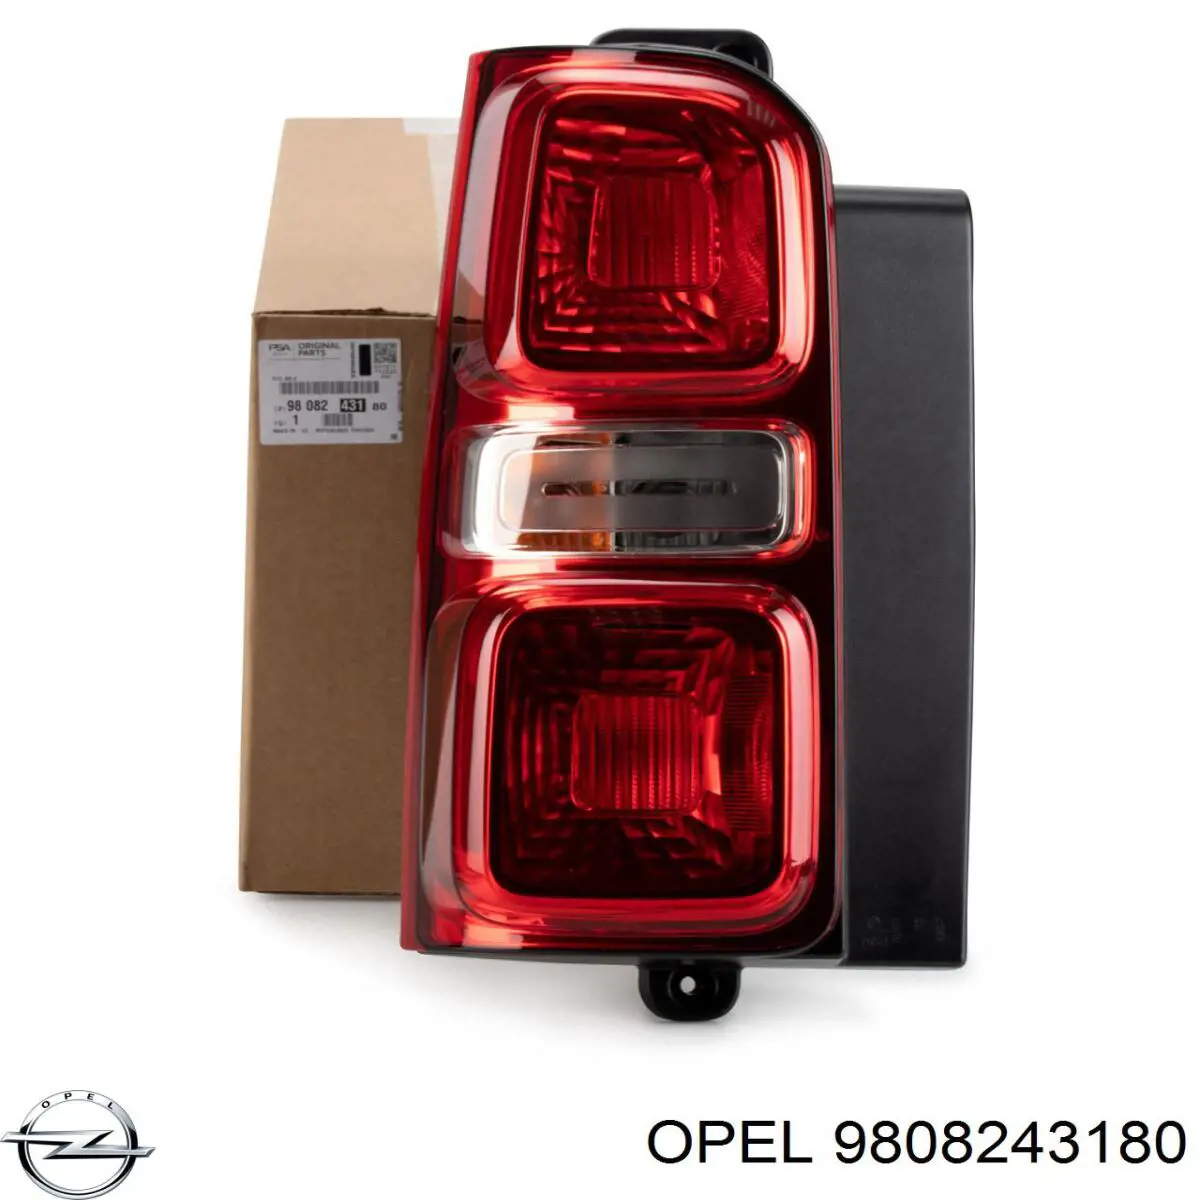 9808243180 Opel lanterna traseira esquerda